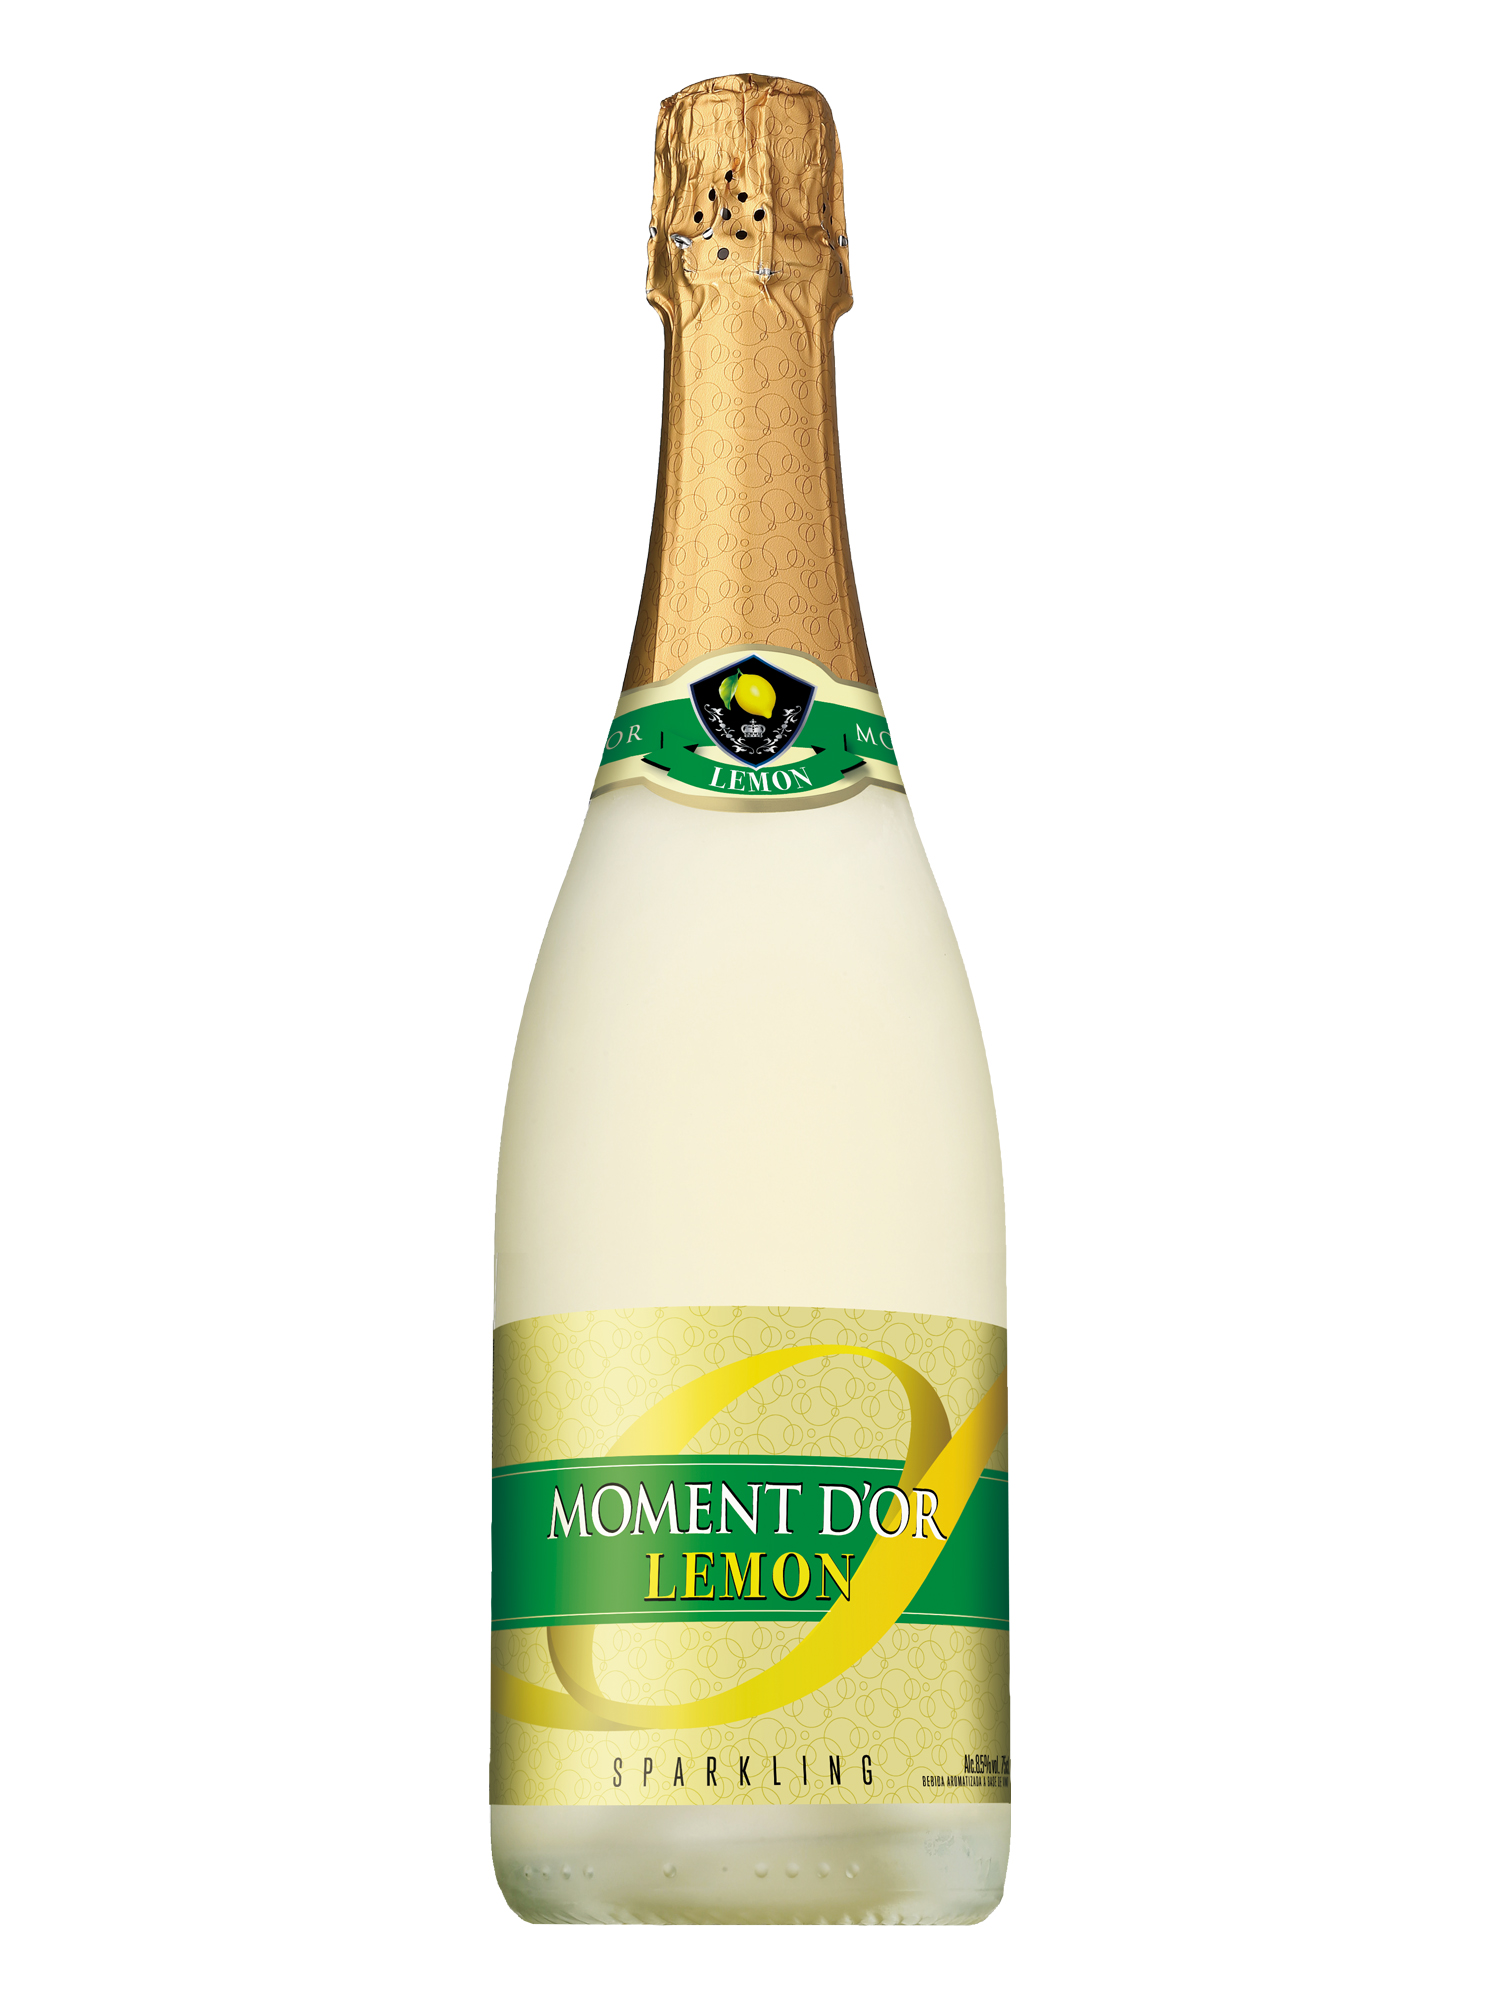 スパークリングワイン「モマンドール レモン」期間限定新発売 2021年7月27日 ニュースリリース サントリー